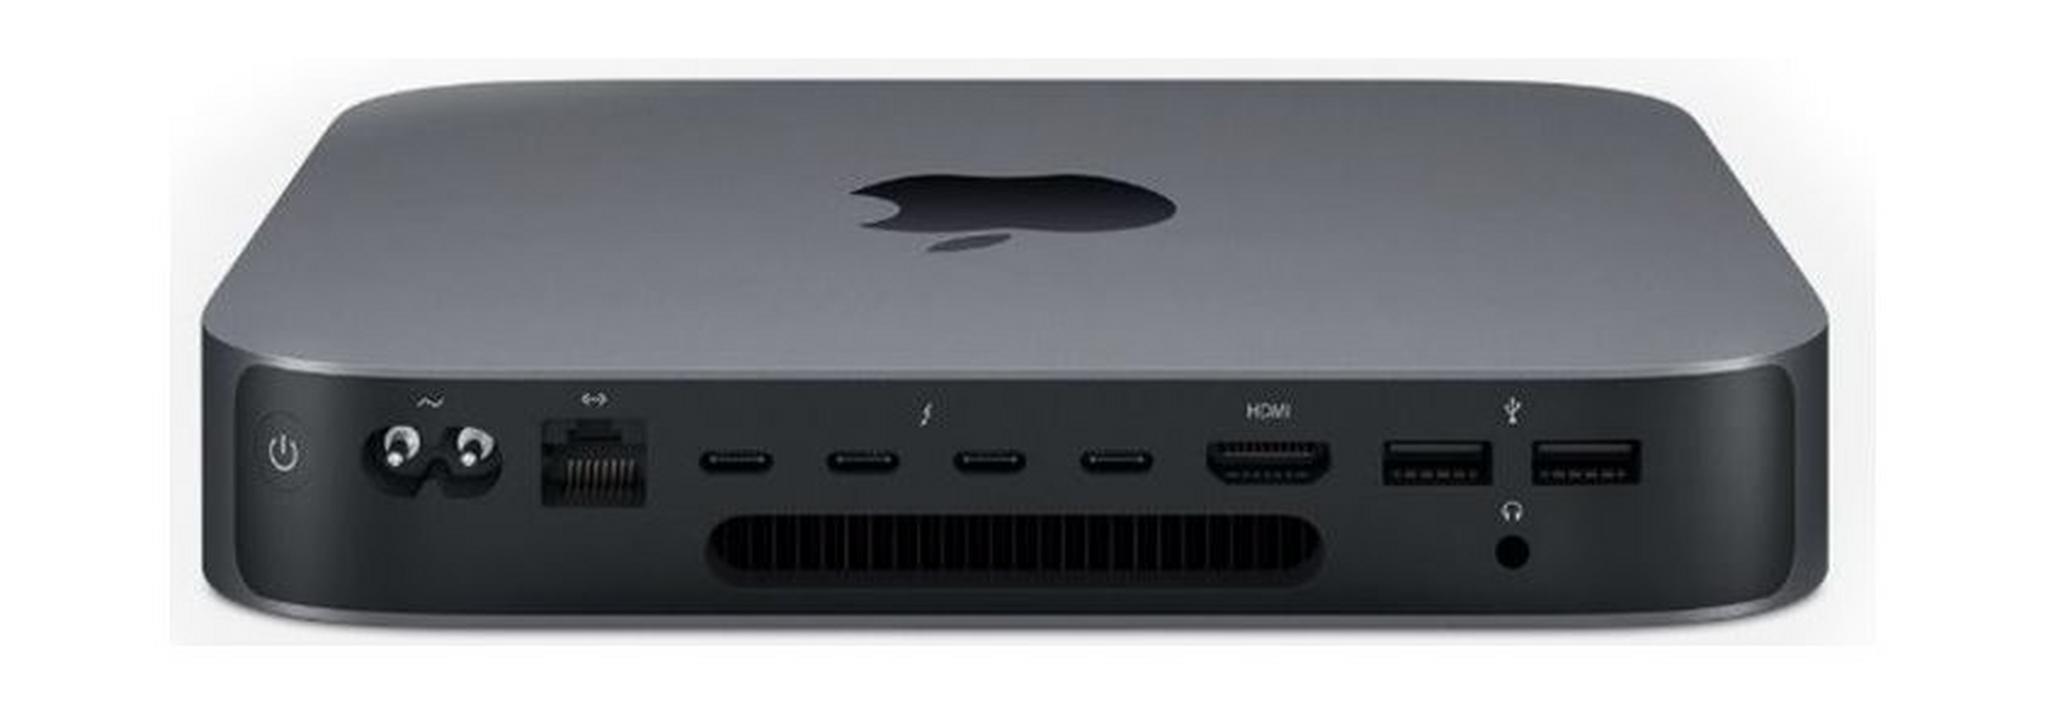 Apple Mac Mini Core i3 8GB RAM 256GB SSD Desktop - (MXNF2AB/A)